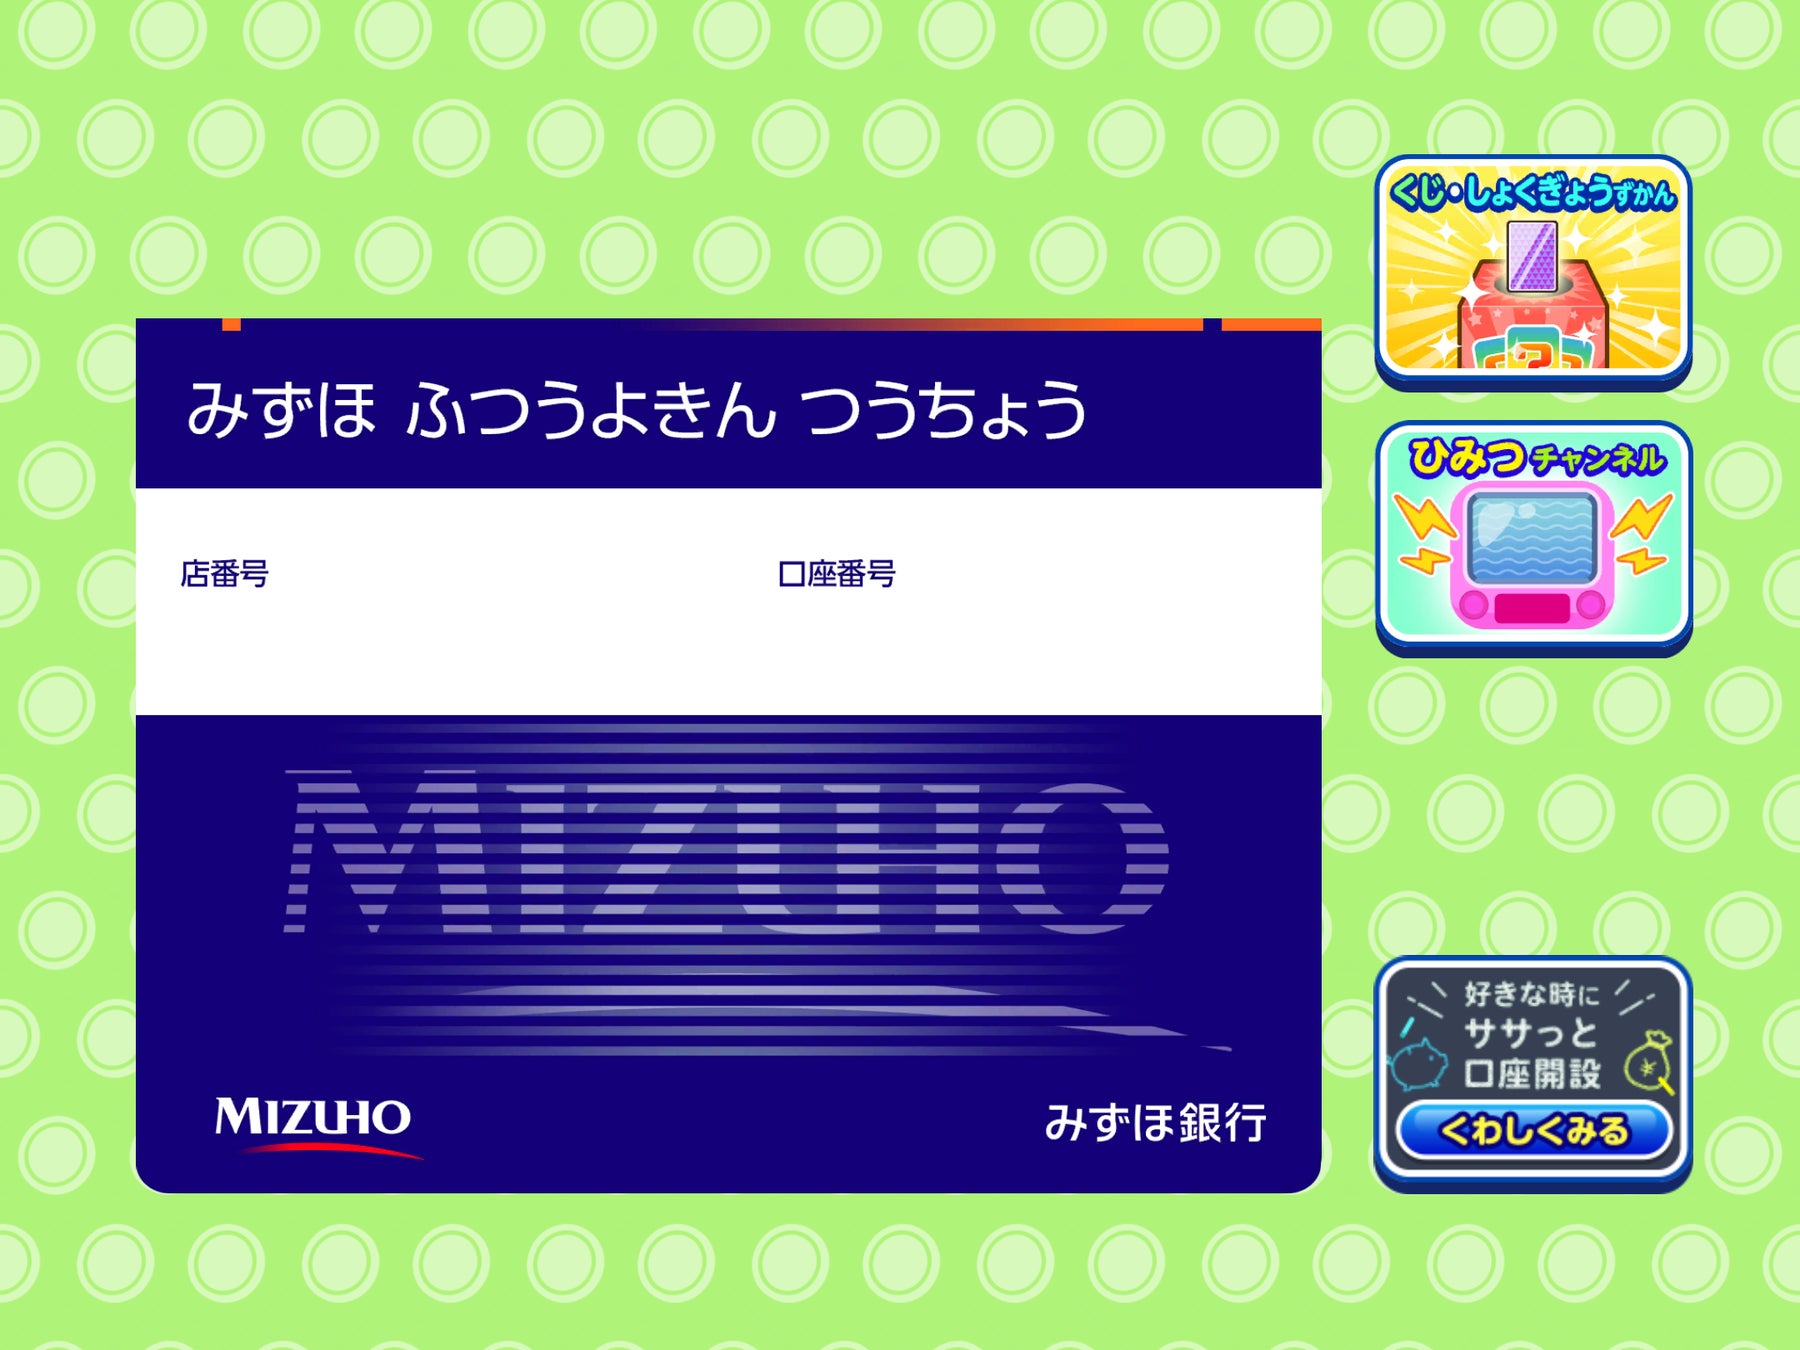 バンダイナムコエンターテインメント発 サウンドレーベル「Bandai Namco Game Music」から「テイルズ オブ 」シリーズ総楽曲数約2,000曲の楽曲を随時配信開始！